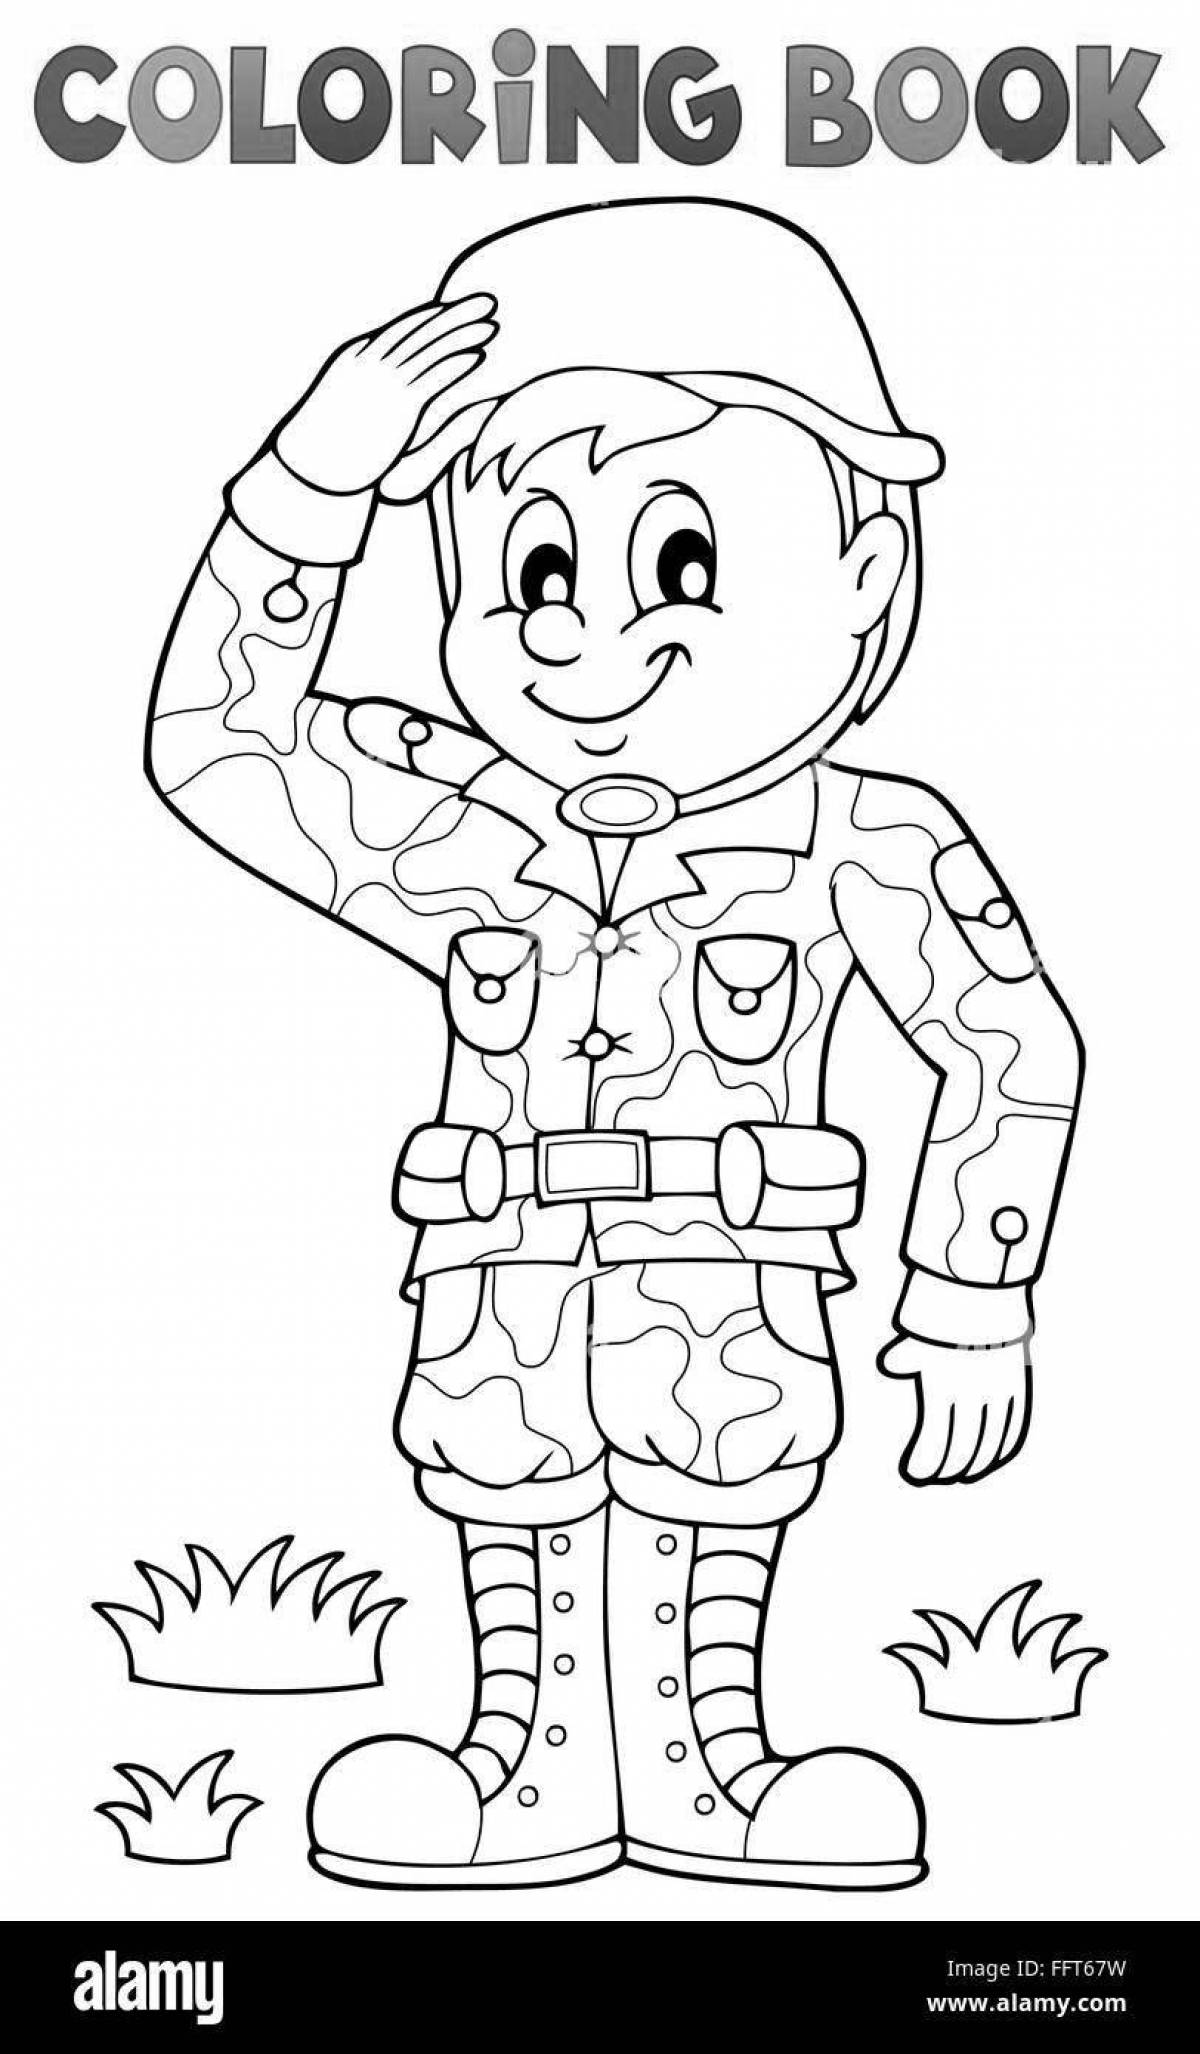 Веселый рисунок солдатика для детей